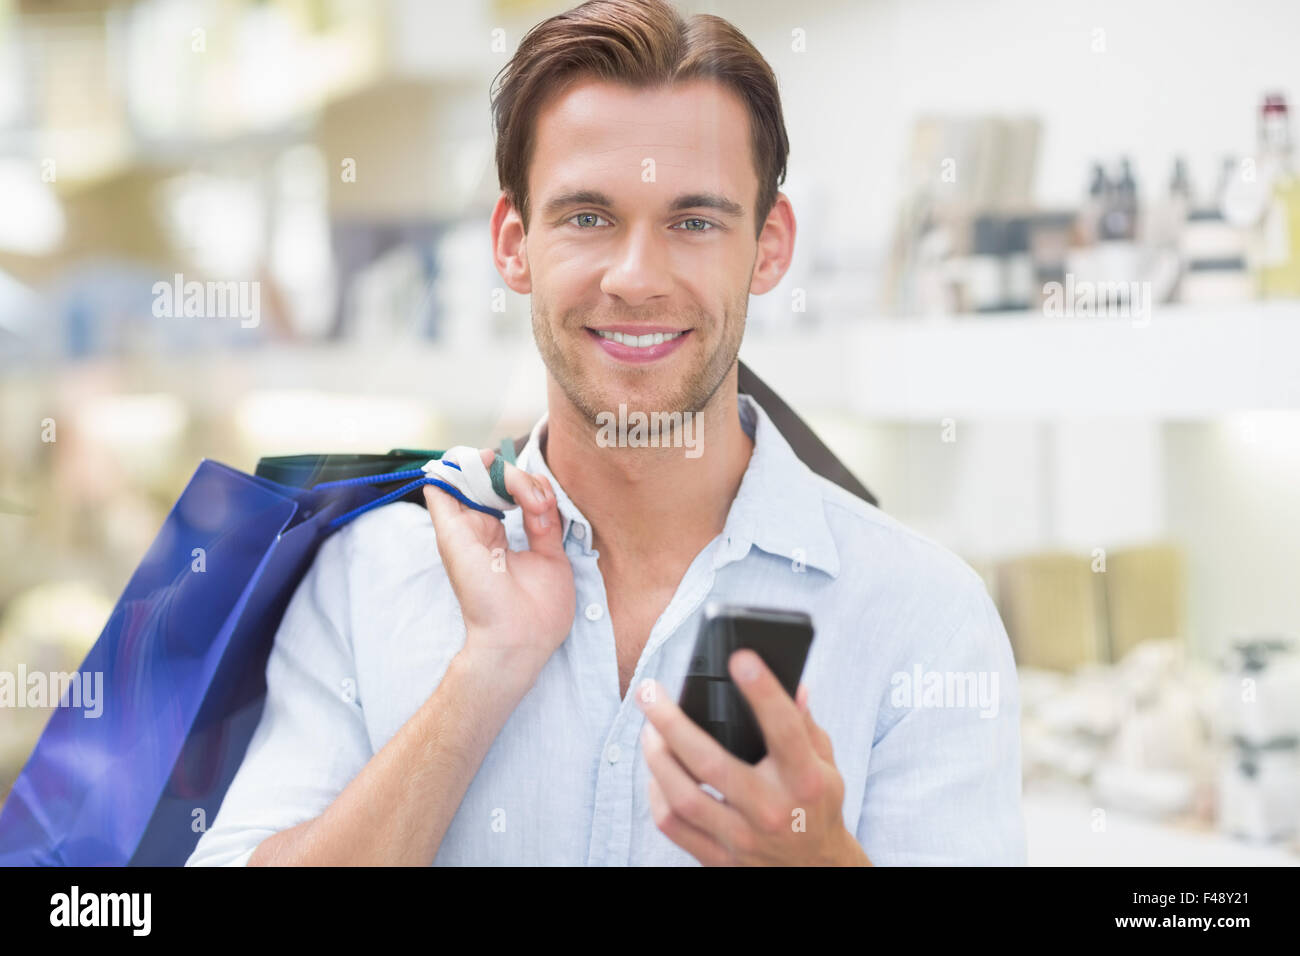 Un hombre sonriendo feliz mirando el teléfono Foto de stock